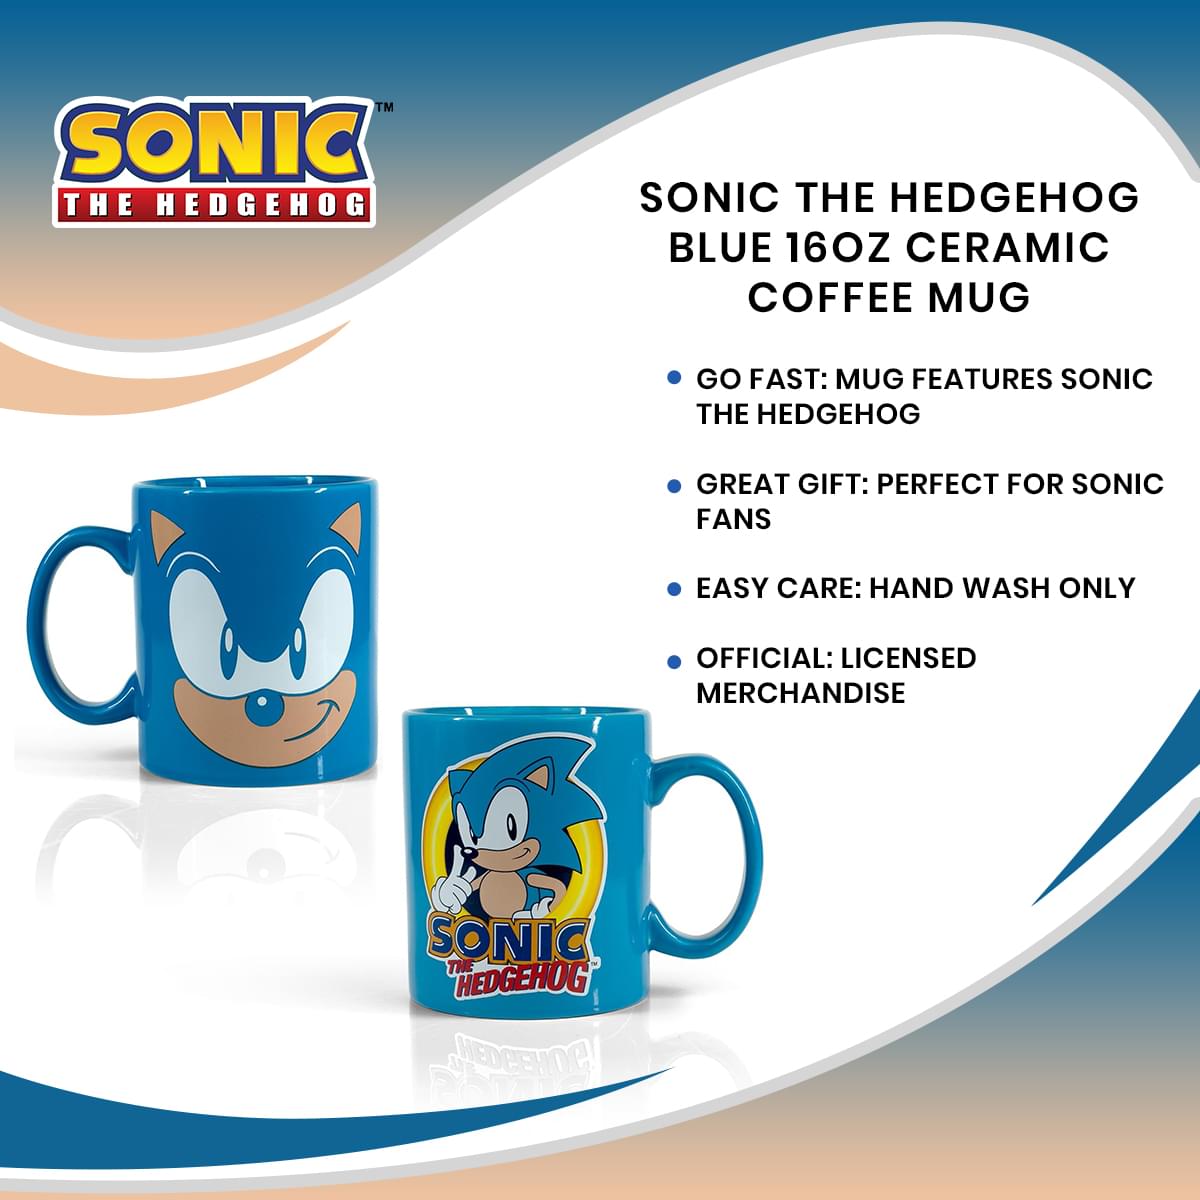 Sonic The Hedgehog Blue 16oz Ceramic Coffee Mug